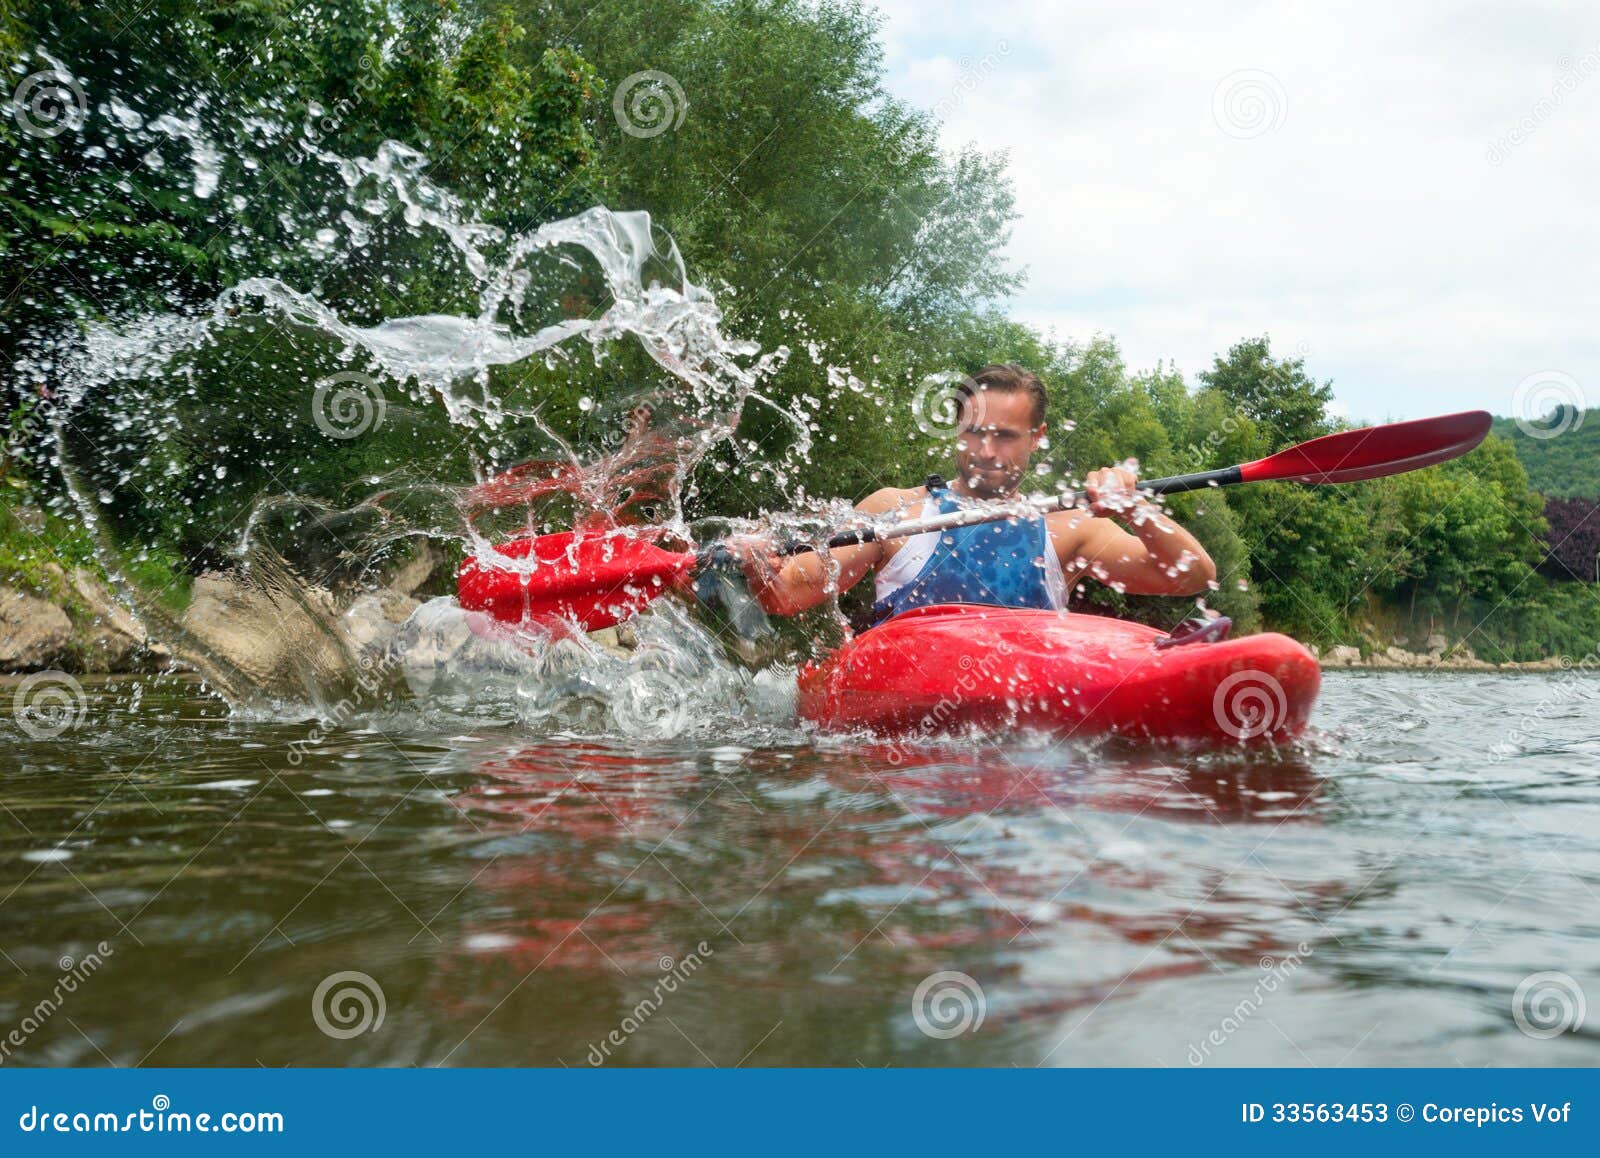 people kayaking